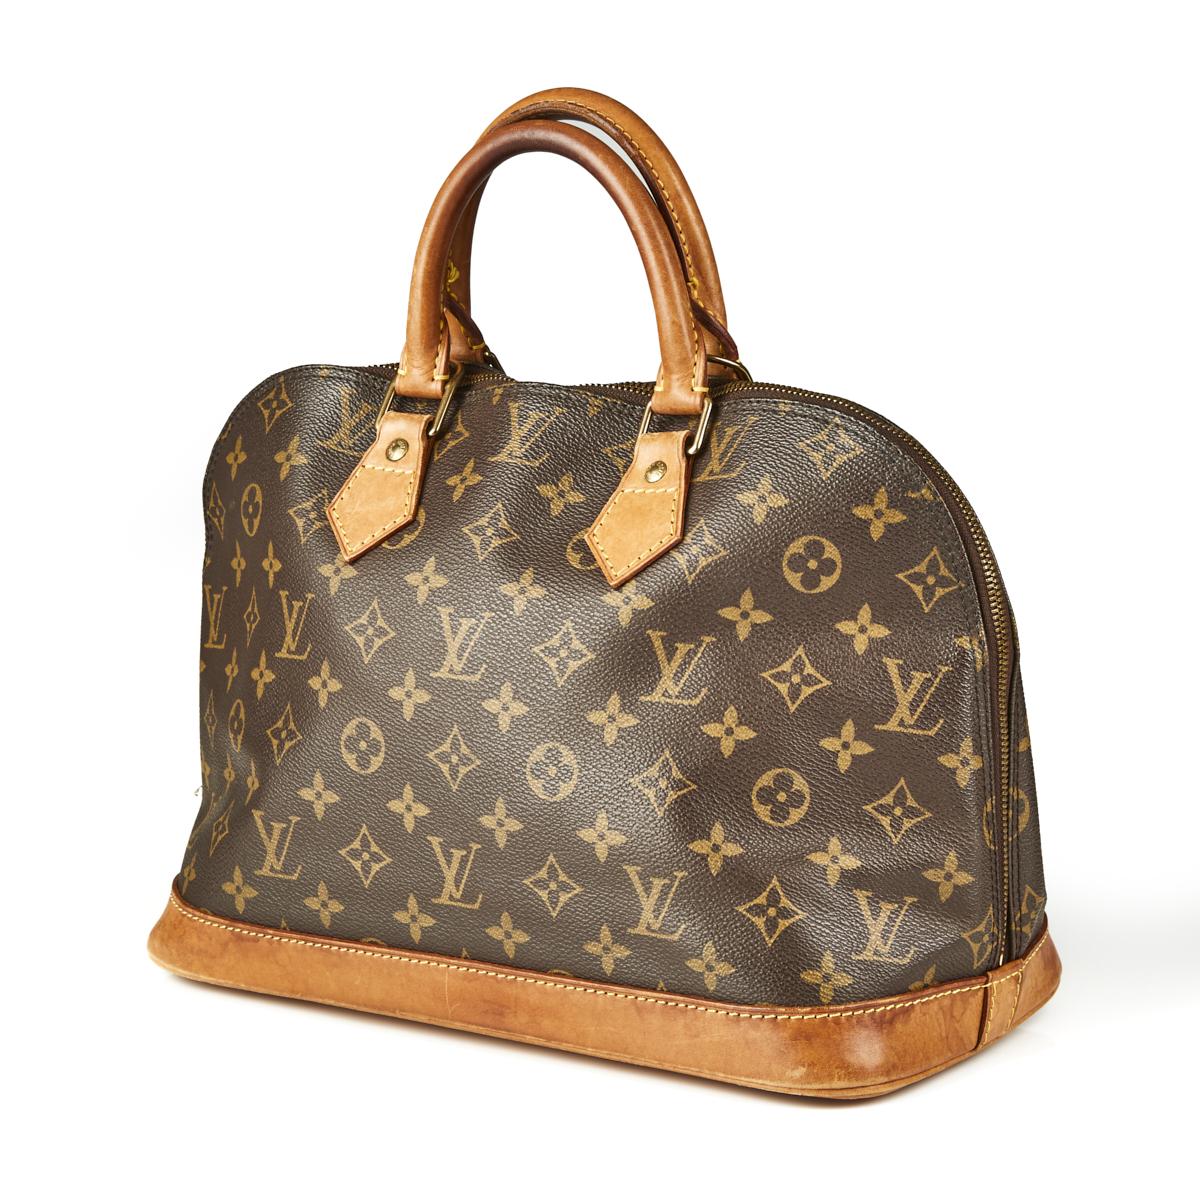 Sold at Auction: Louis Vuitton, LOUIS VUITTON Handtasche ALMA PM